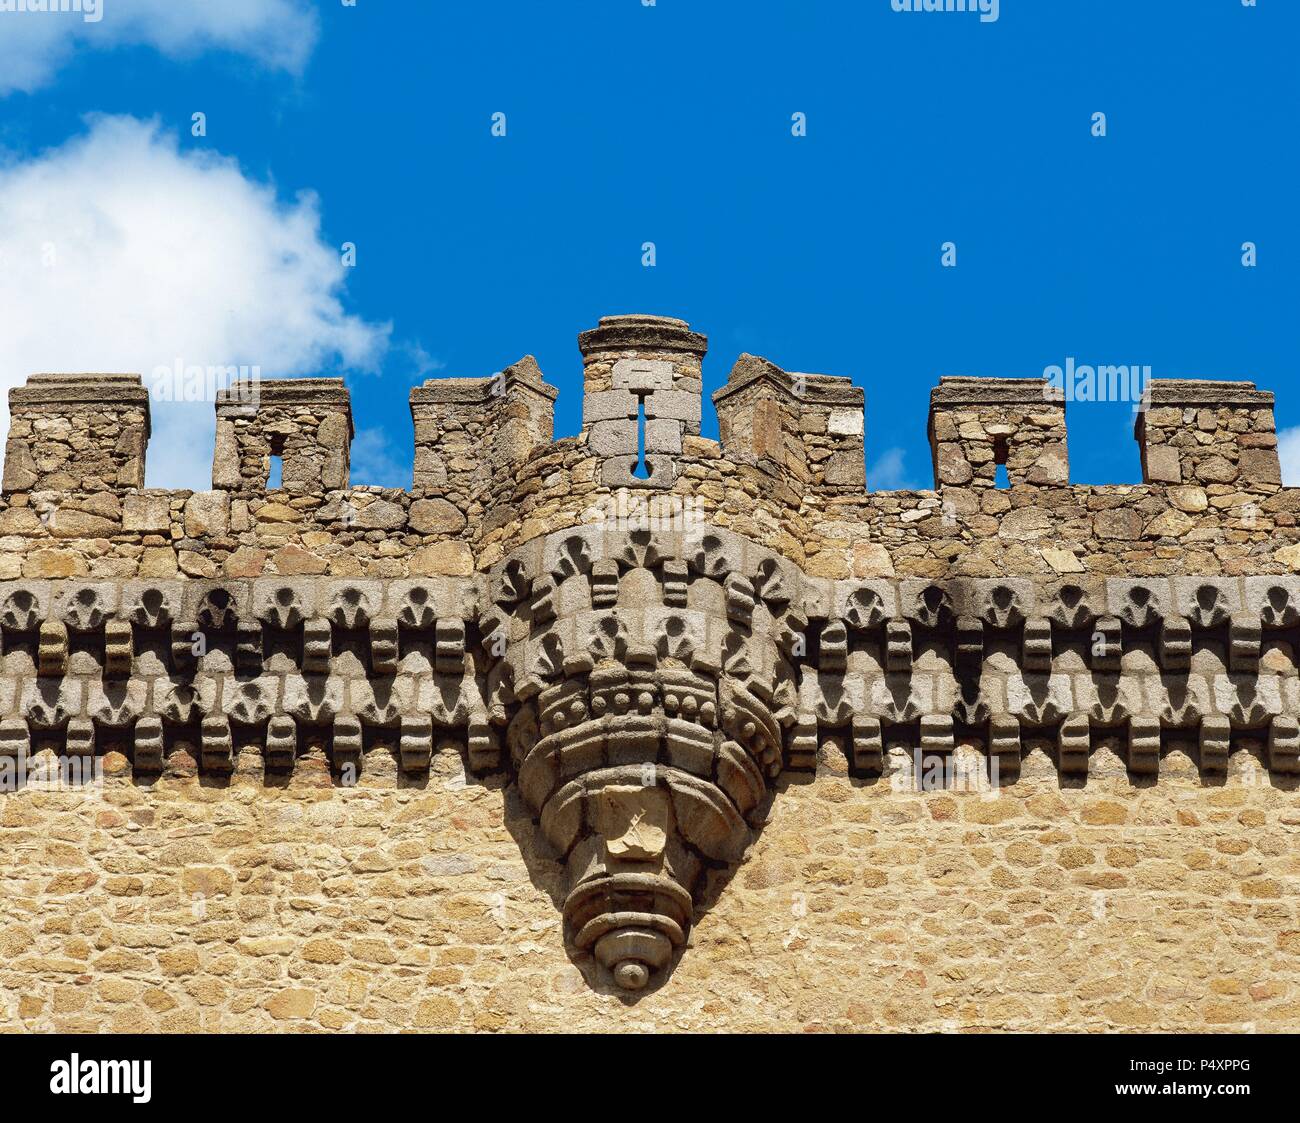 Spagna. Comunità di Madrid. Manzanares el Real. Il Castello Reale, costruito nel 1475 per ordine di Diego Hurtado de Mendoza. Dettaglio. Foto Stock